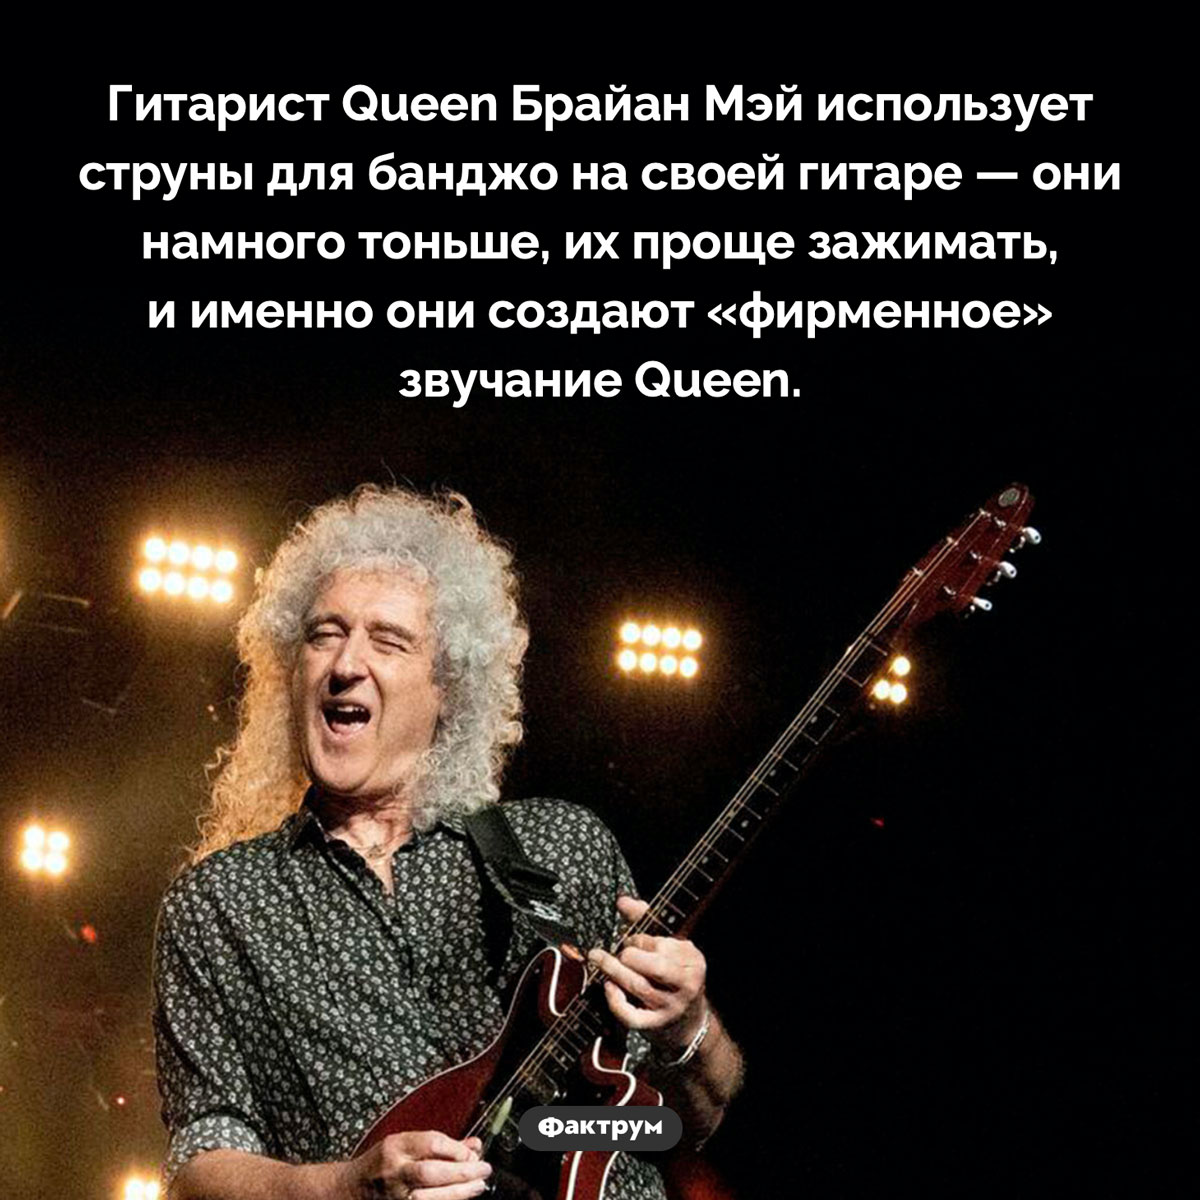 Секрет Брайана Мэя. Гитарист Queen Брайан Мэй использует струны для банджо на своей гитаре — они намного тоньше, их проще зажимать, и именно они создают «фирменное» звучание Queen.